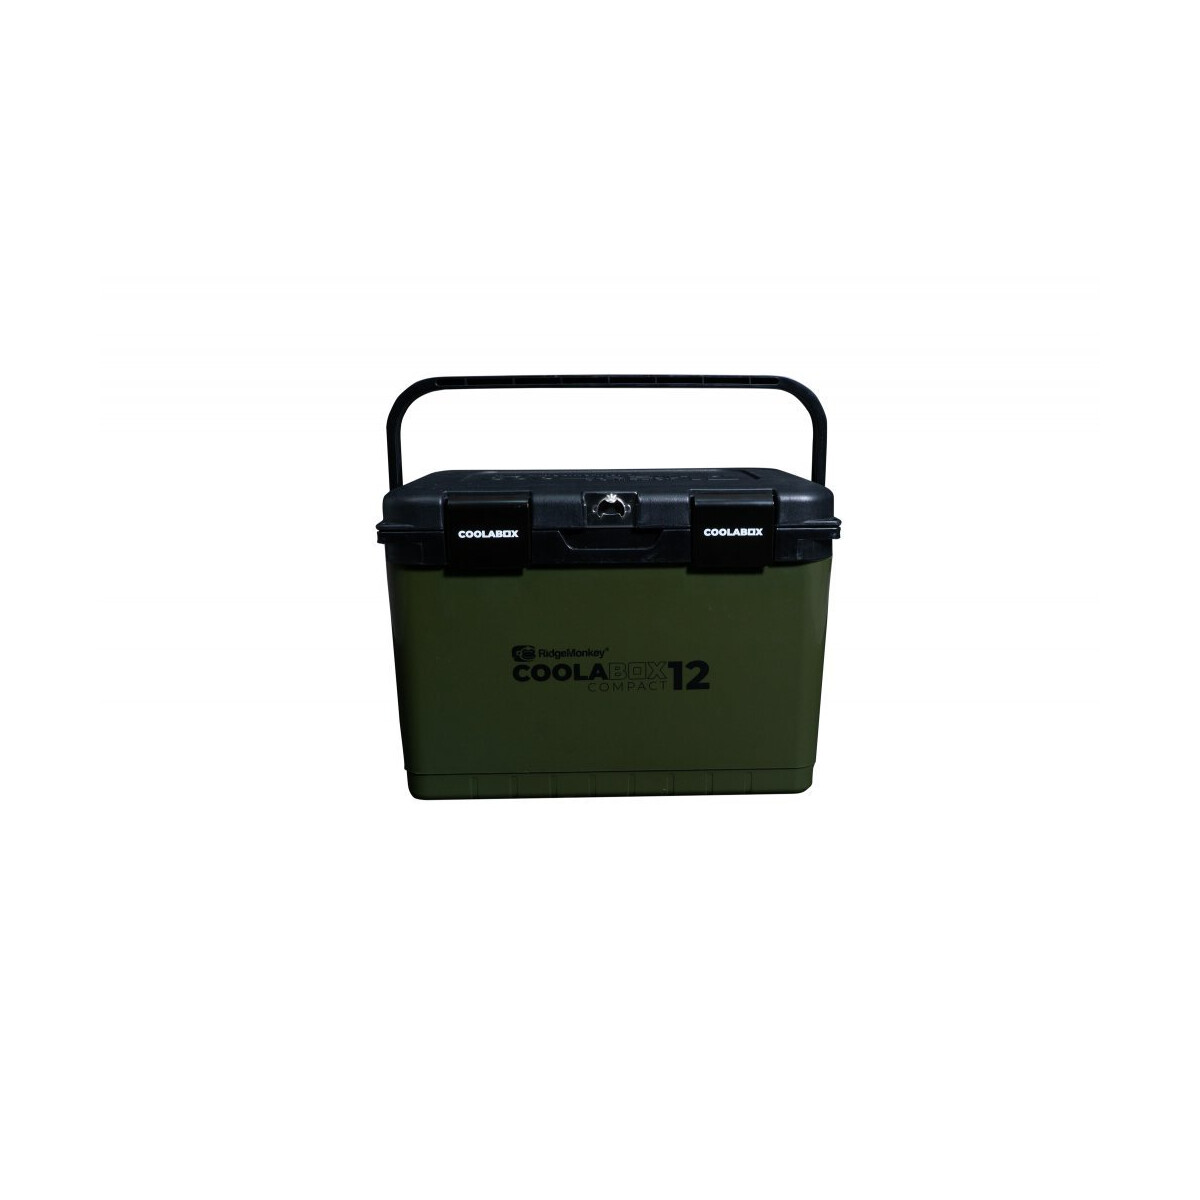 RidgeMonkey CoolaBox Compact 12l - Successful-Baits.de - Die Boiliema,  89,90 €